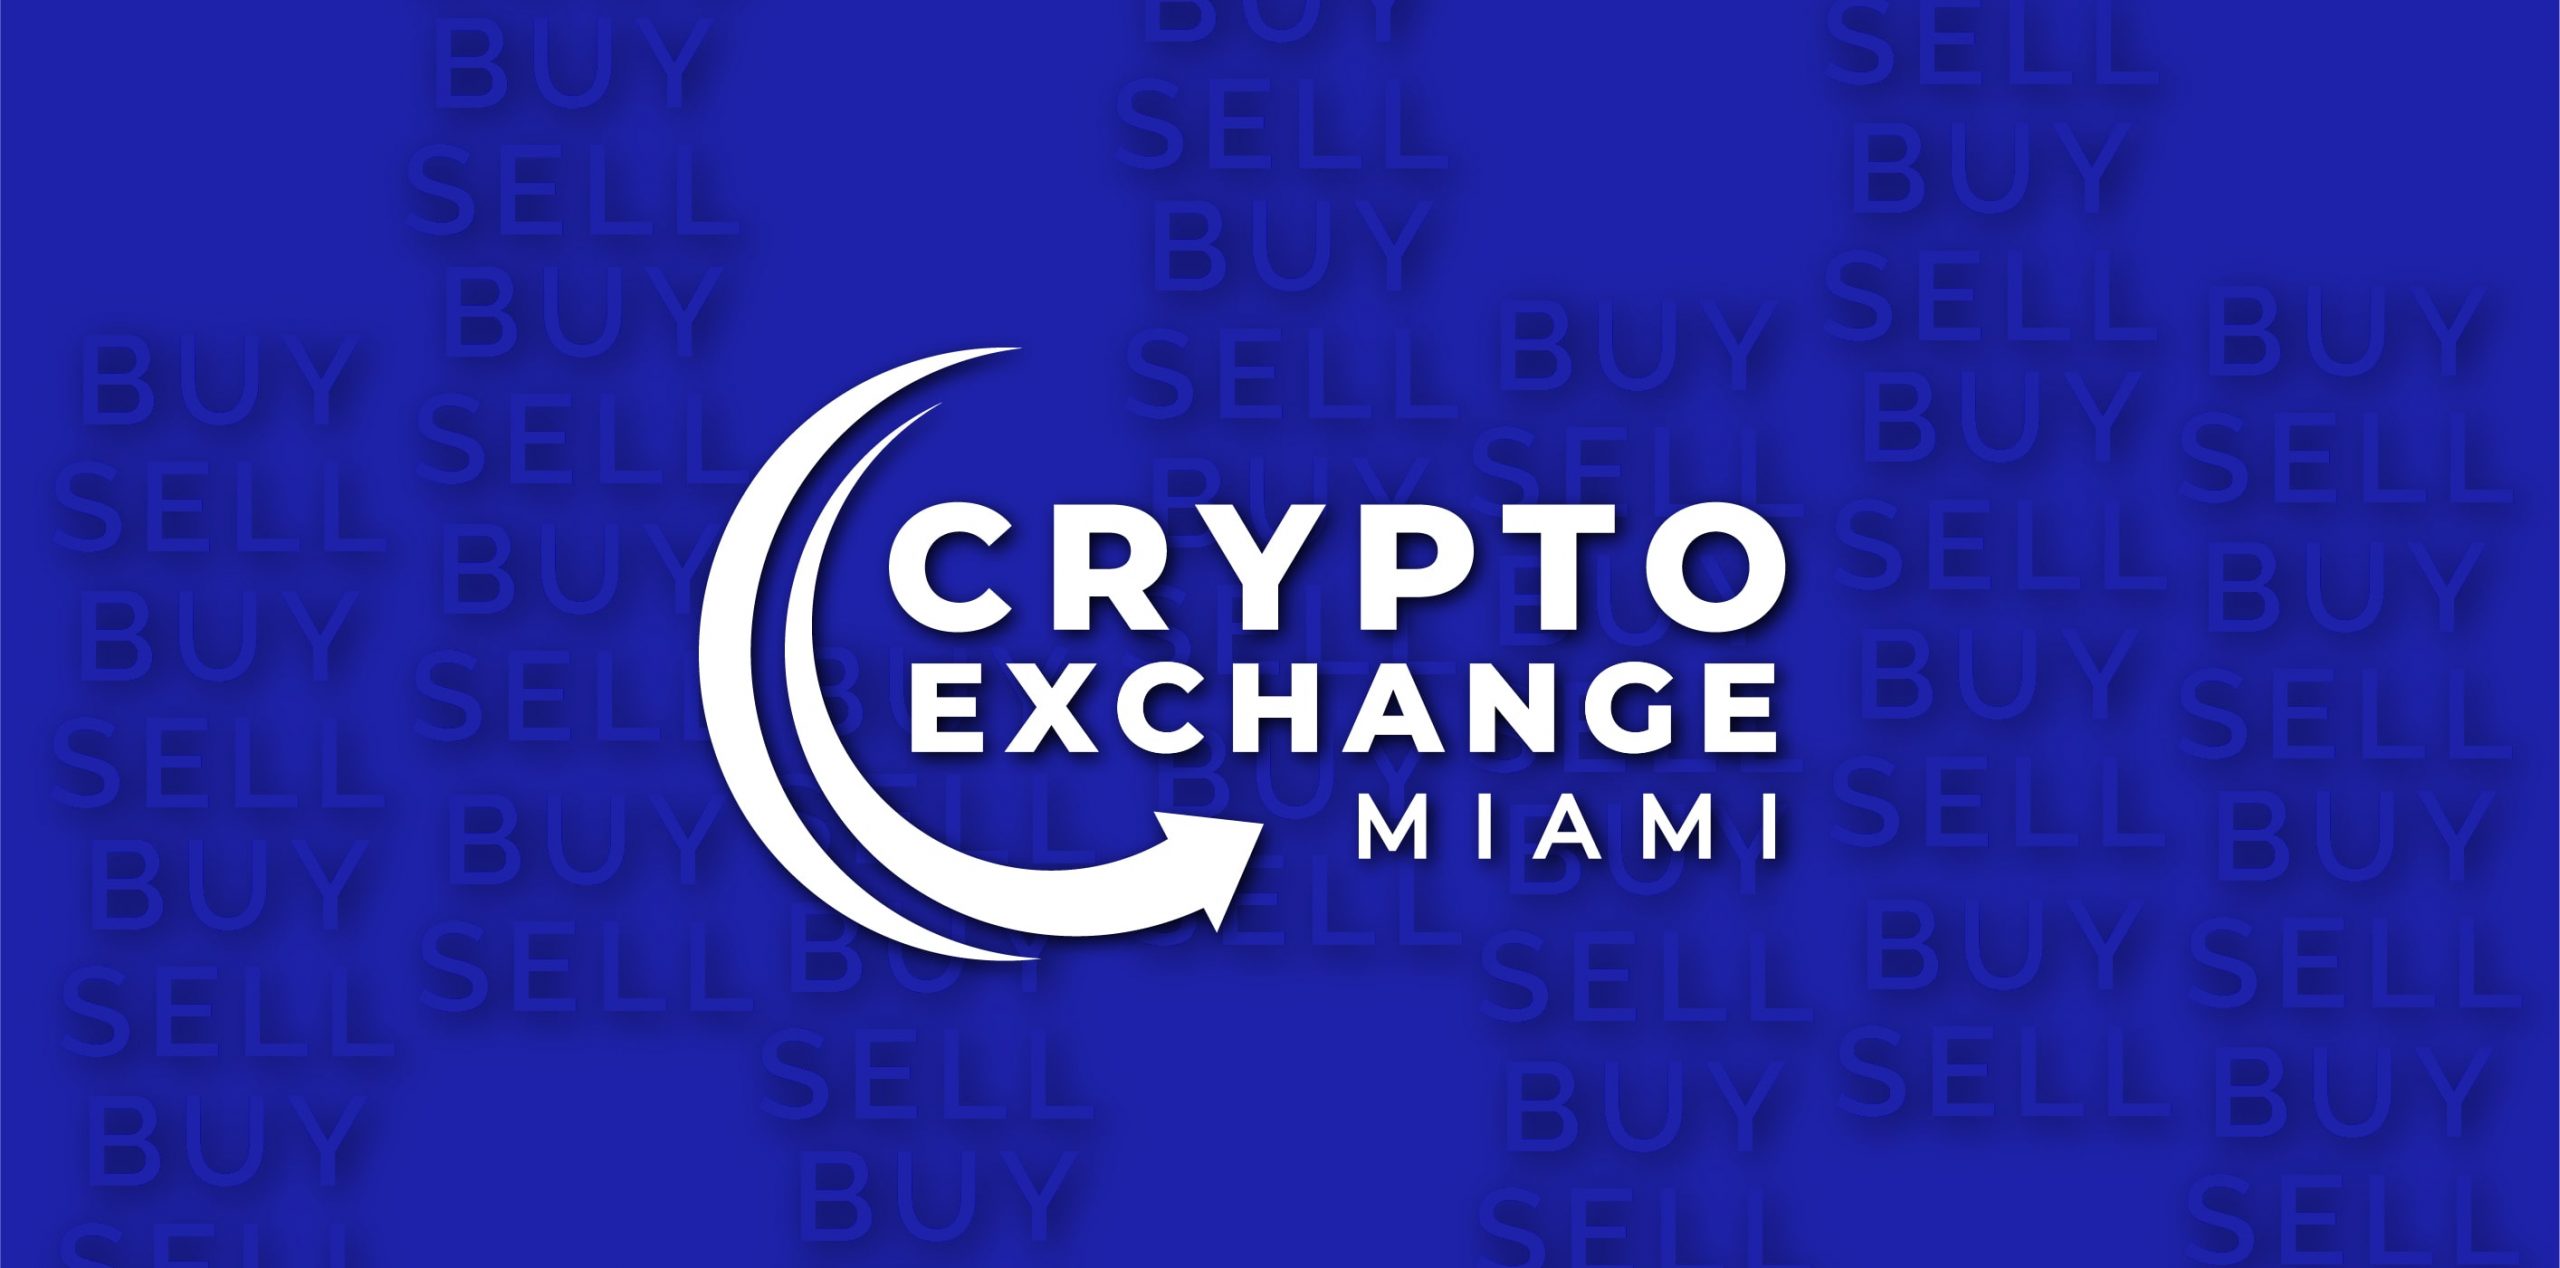 miami crypto exchange ico